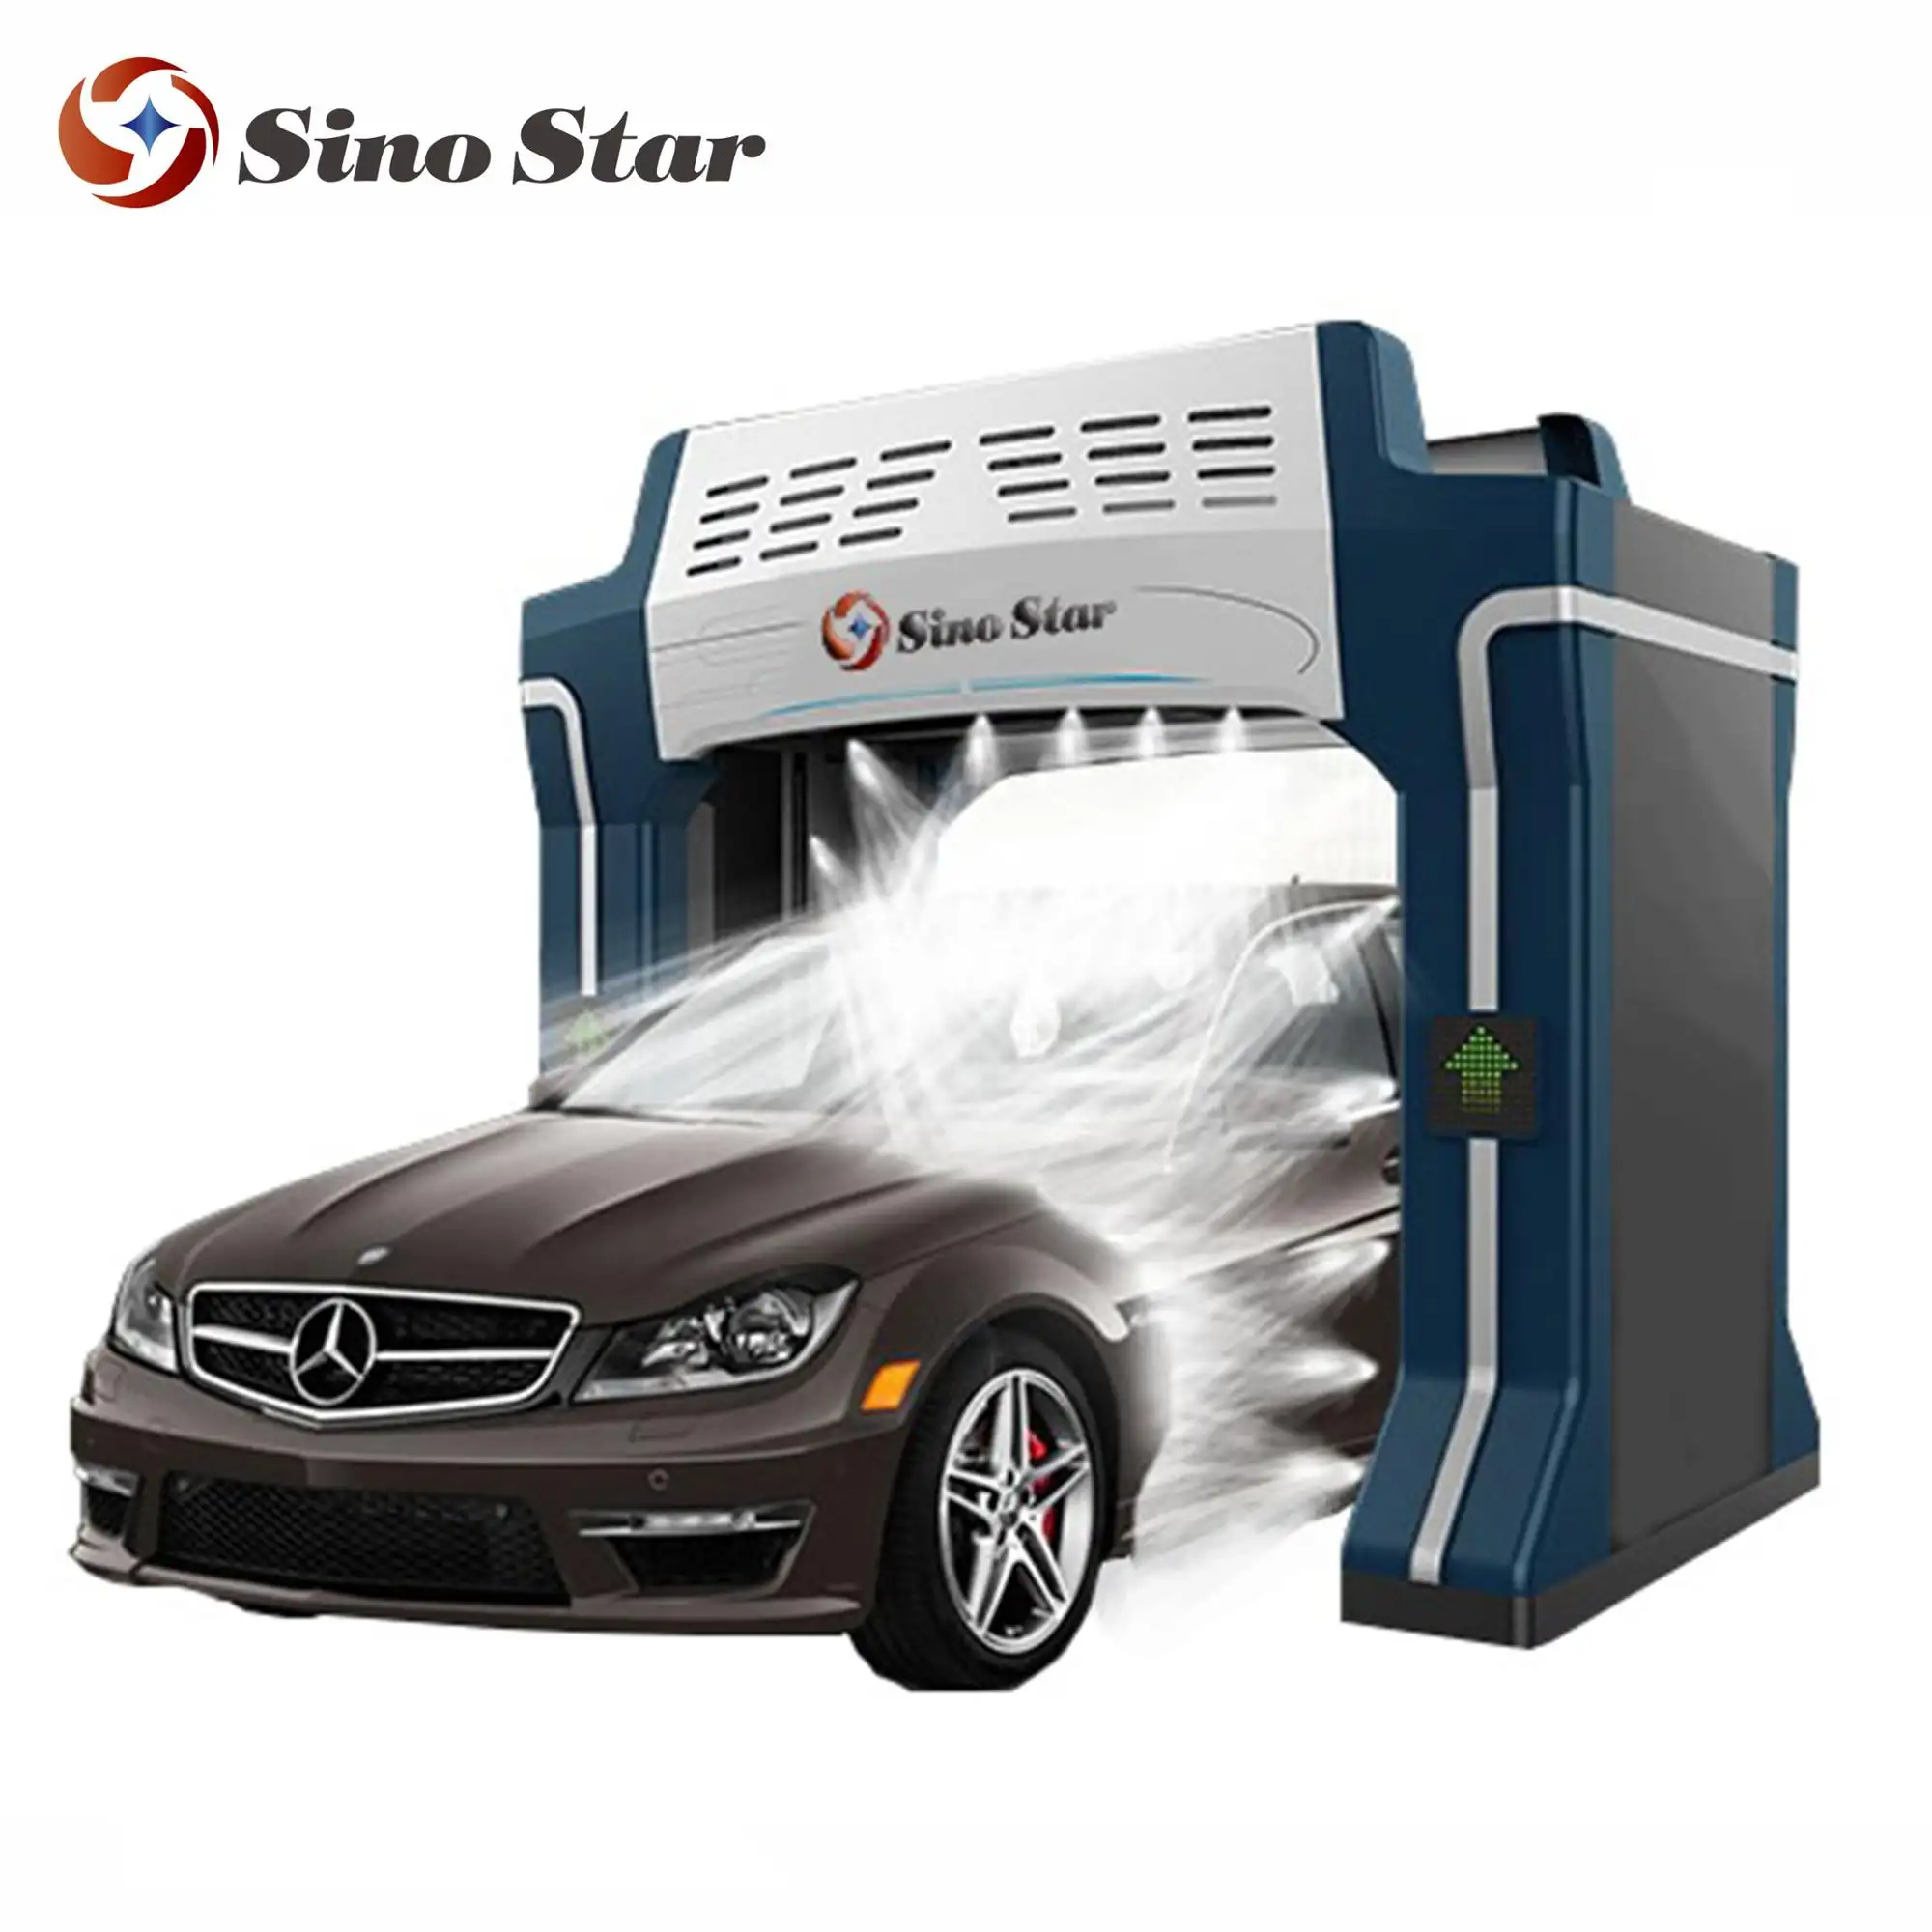 SINO STAR S7 Penghemat Air Rollover Mesin Cuci Mobil, Sistem Cuci Mobil Otomatis Penuh